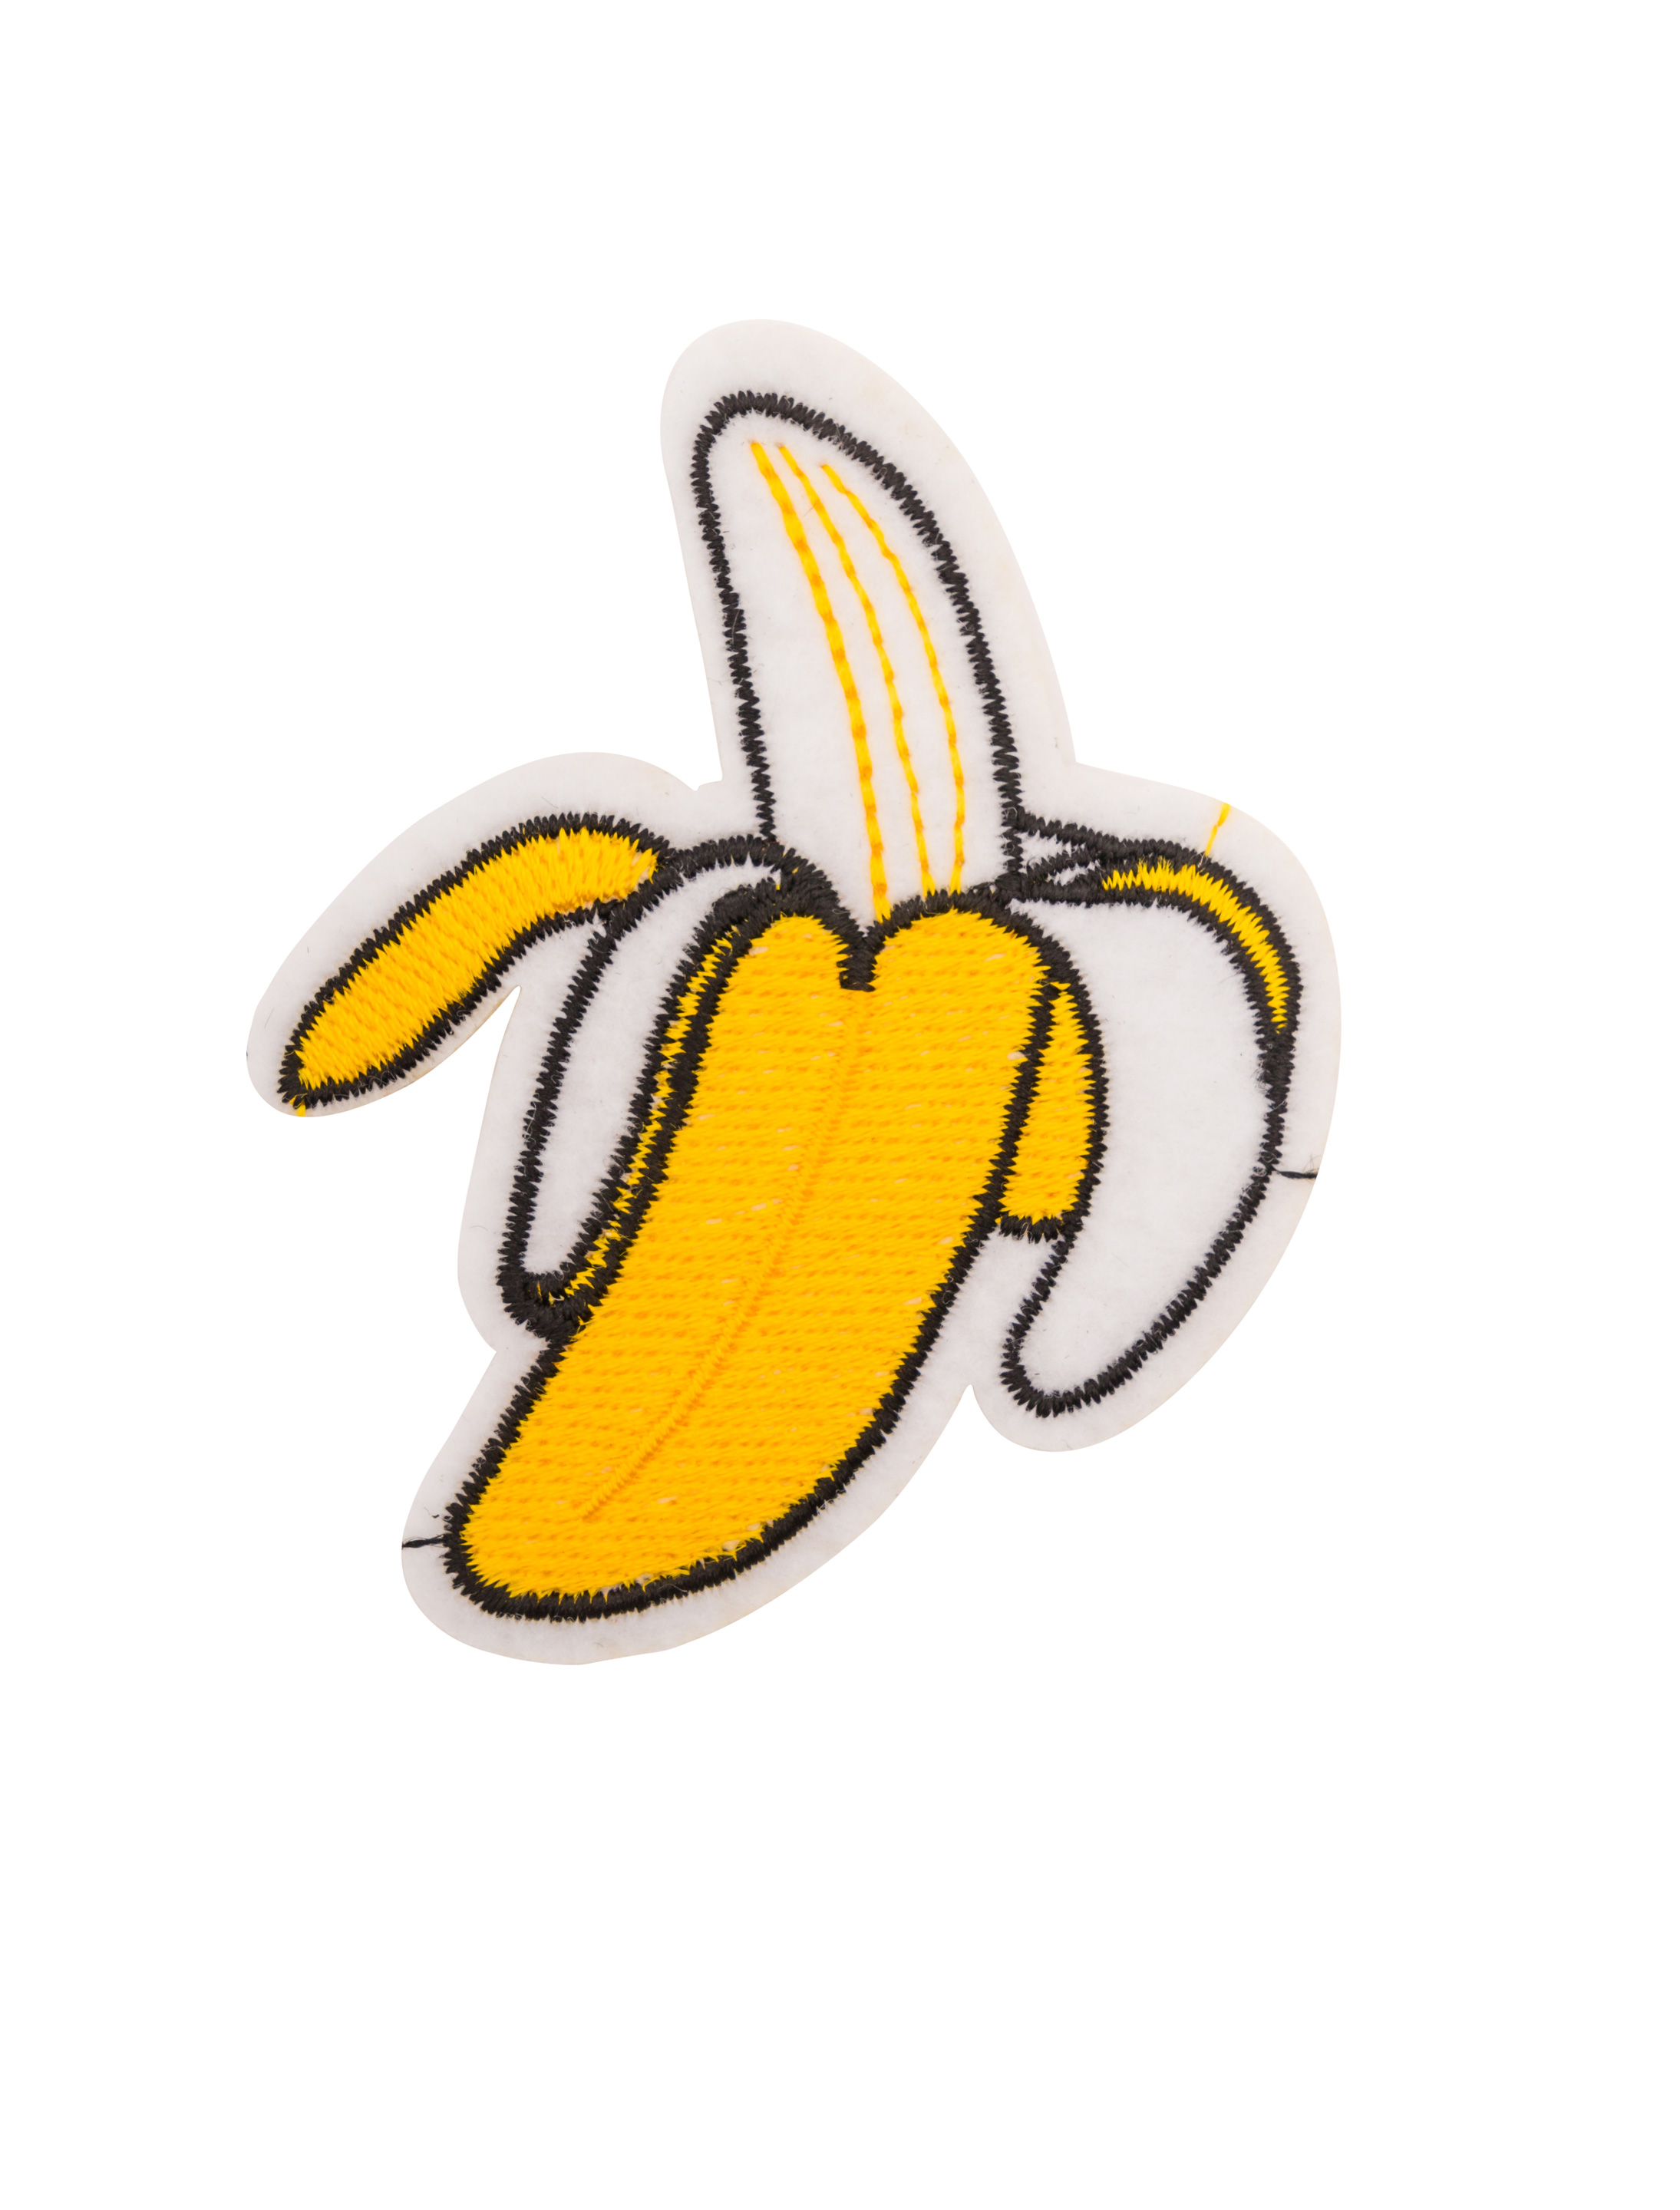 Aufnäher/Bügelbild Banane 8cm